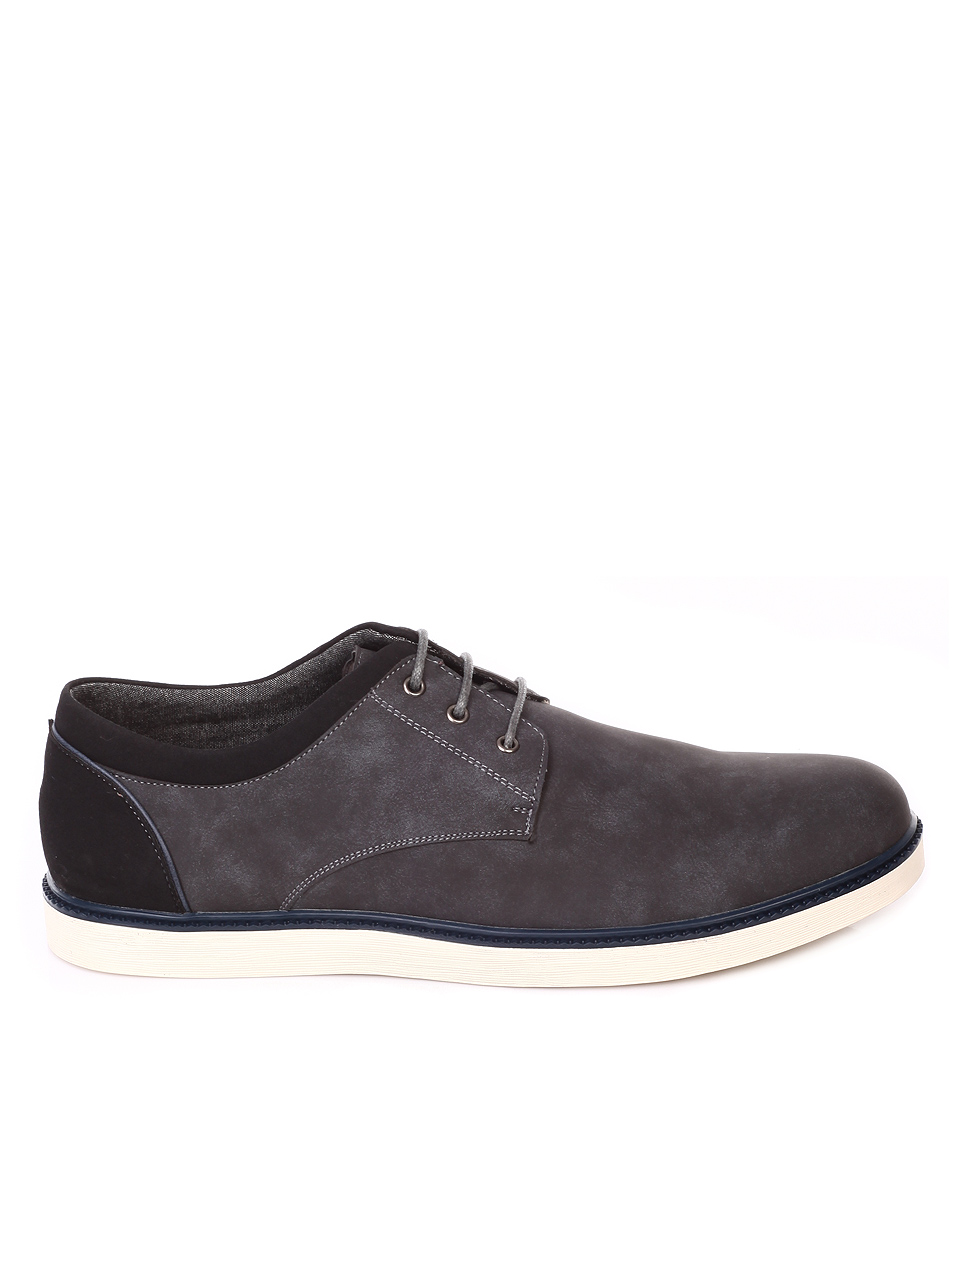 Ежедневни мъжки обувки в сиво 7N-19081 grey